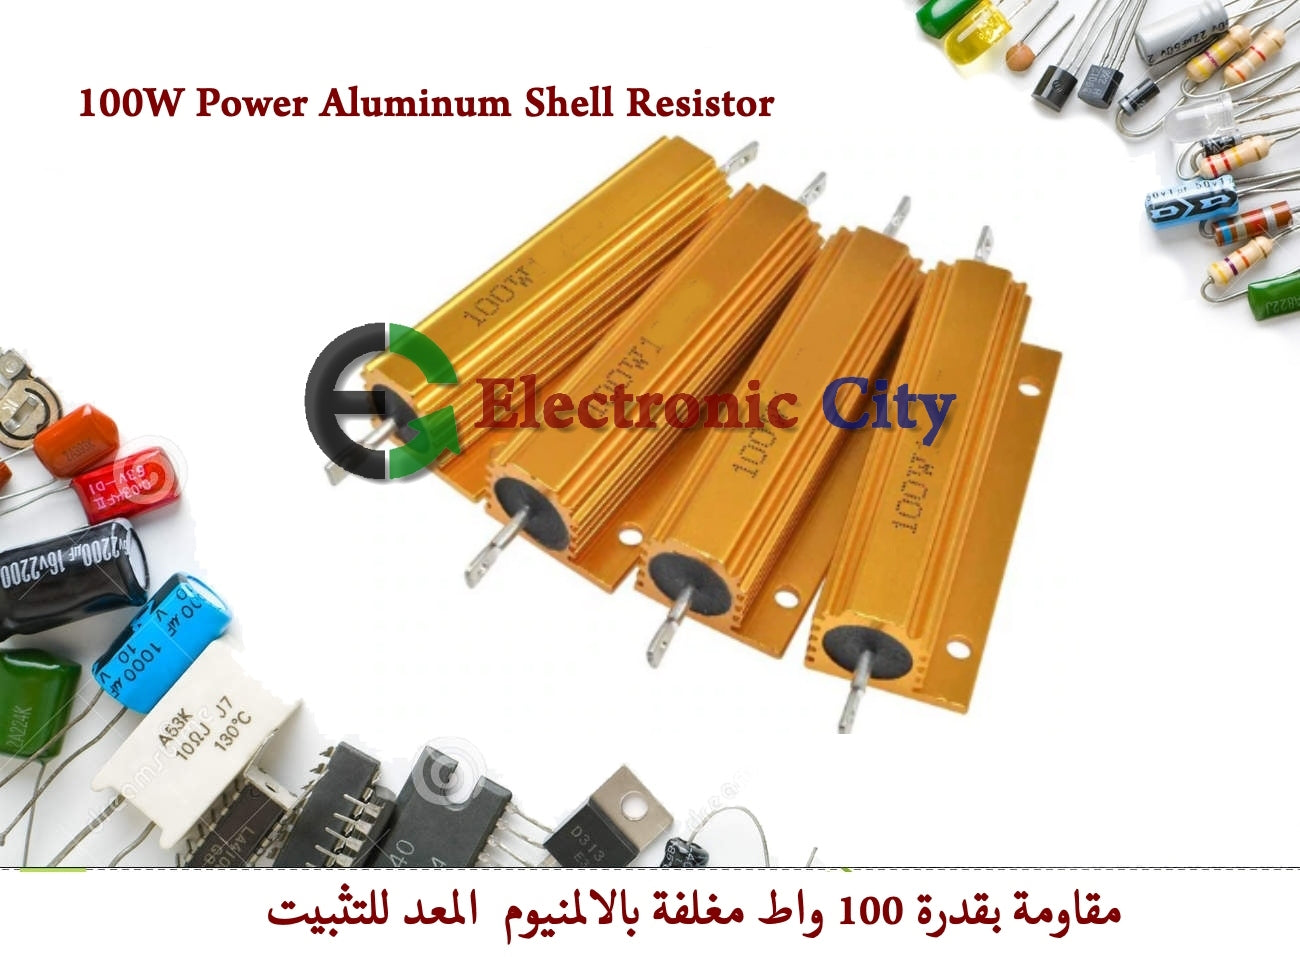 100W Power Aluminum Shell Resistor